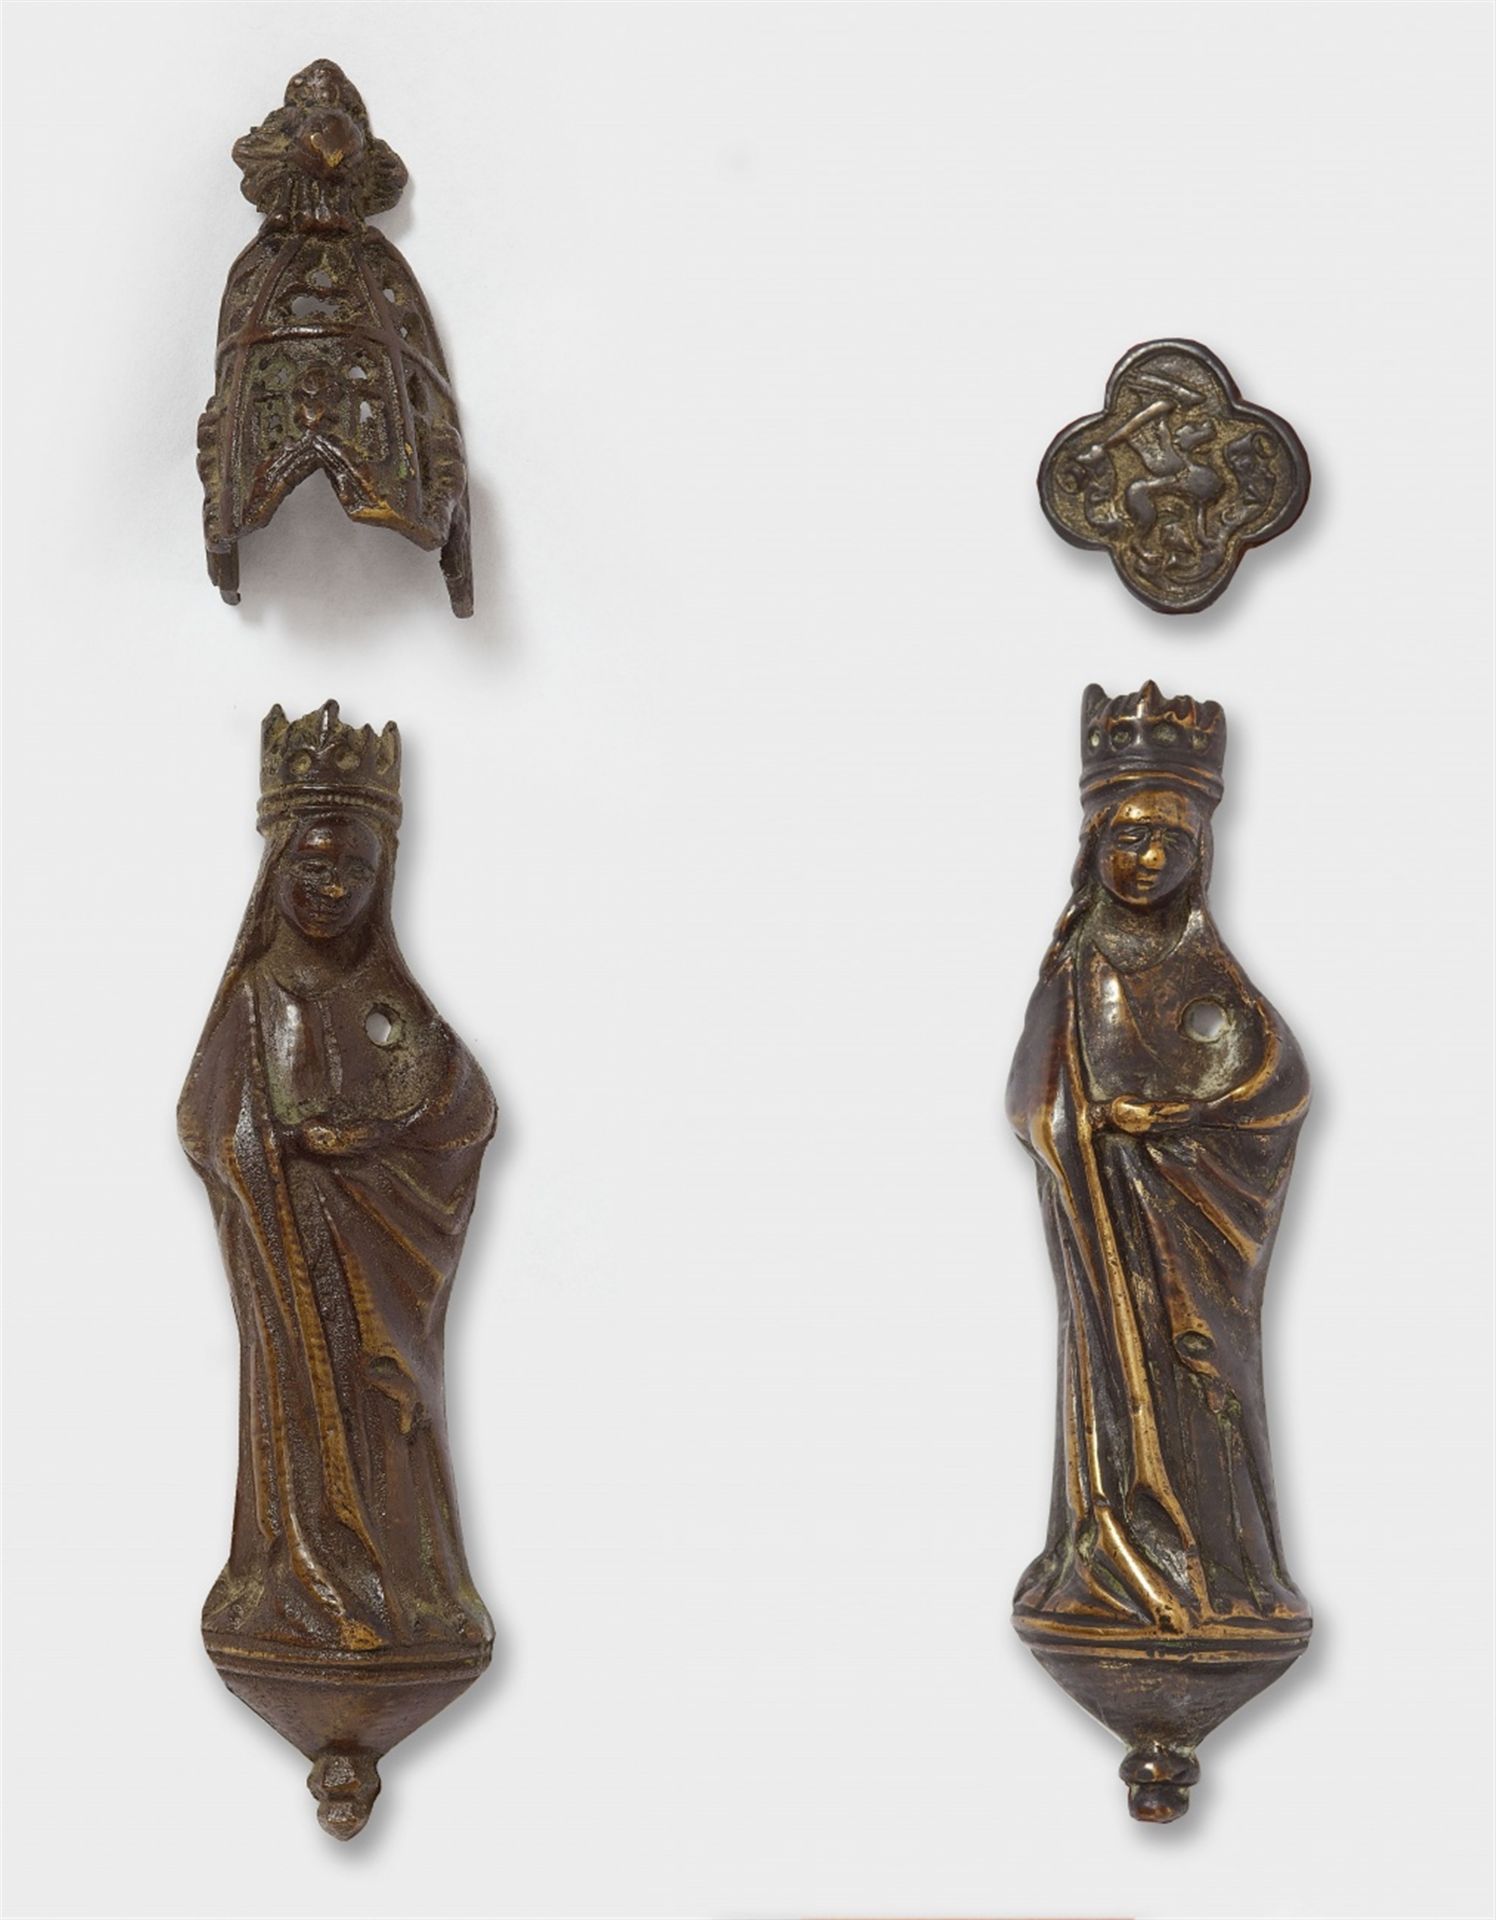 Flämisch 2. Hälfte 15. Jahrhundert, Zwei Muttergottes-Statuetten